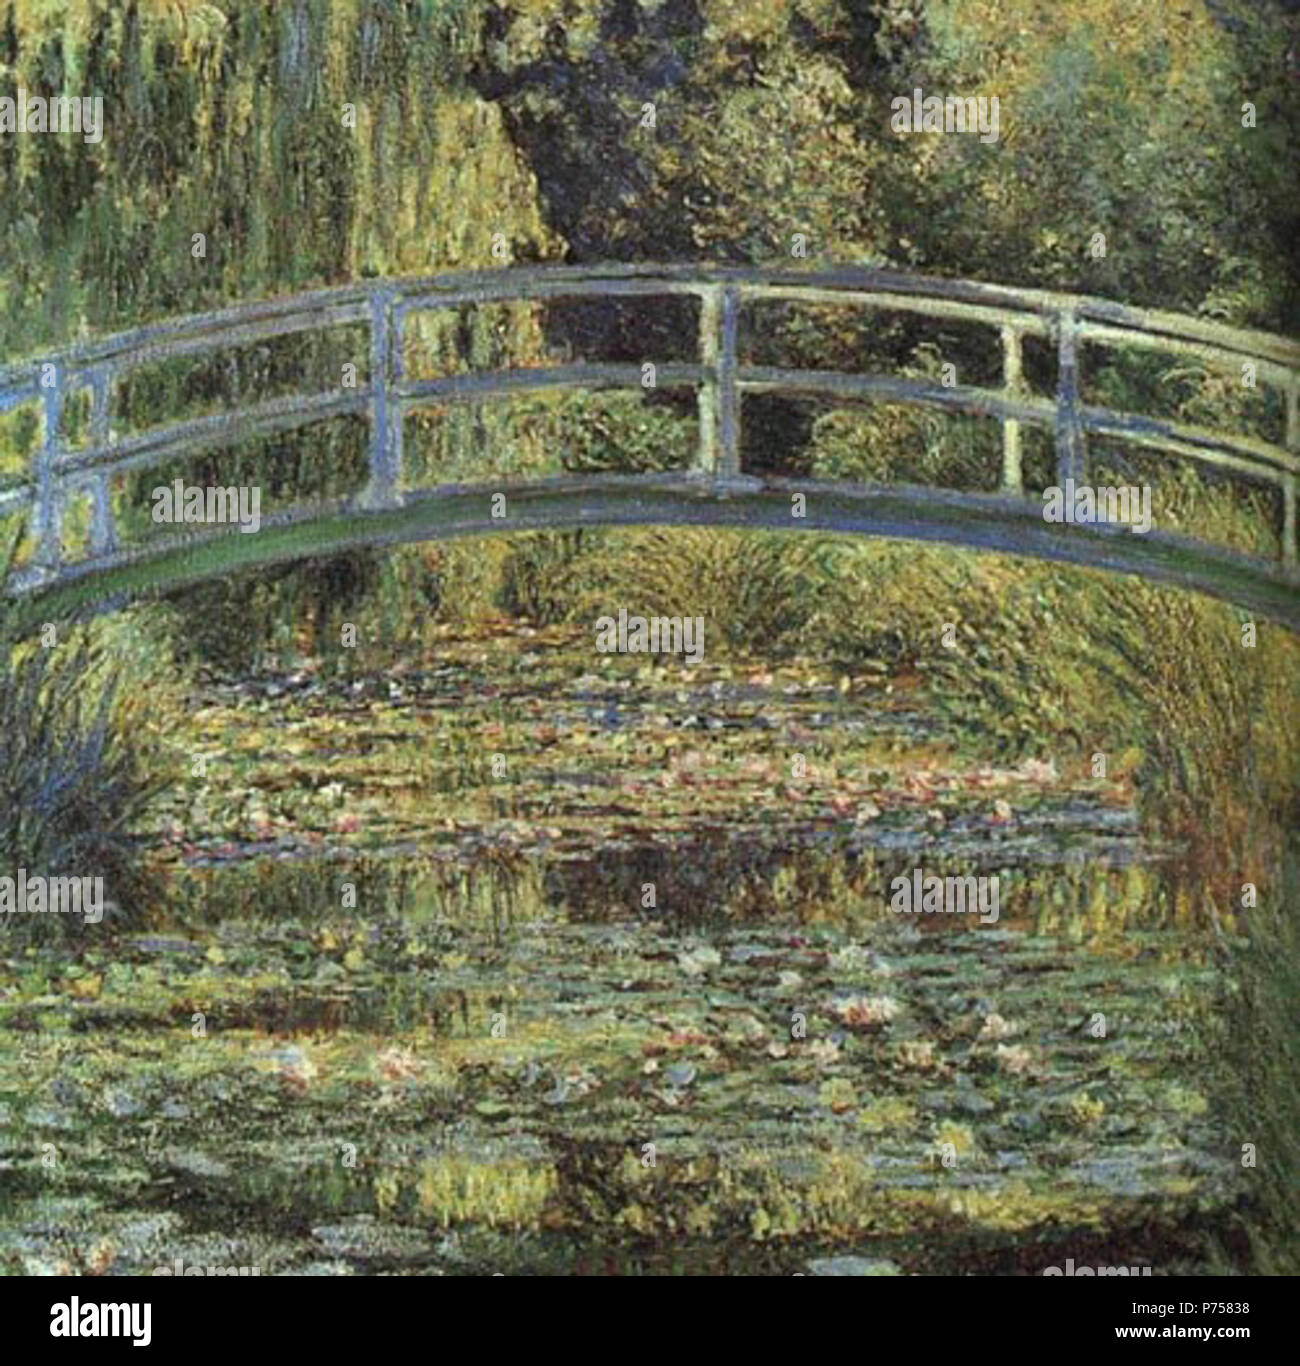 . Französisch: Le Bassin aux Nymphéas, Harmonie verte Die Seerose Teich, grüne Harmonie C. 1899 28 Claude Monet-Waterlilies Stockfoto